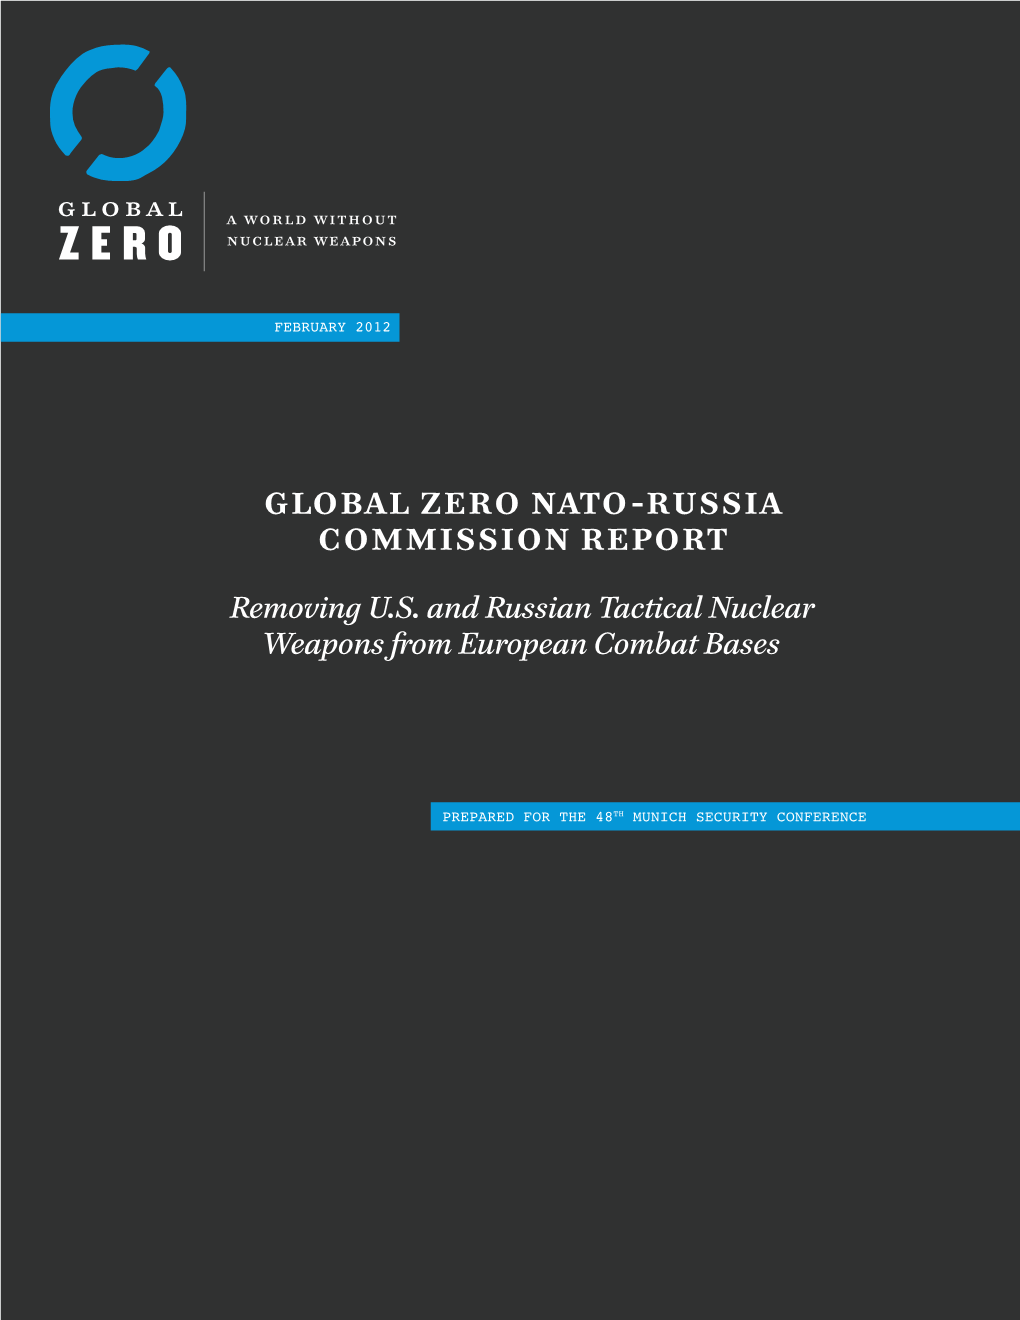 Global Zero NATO-Russia Commission REPORT REMOVING U.S